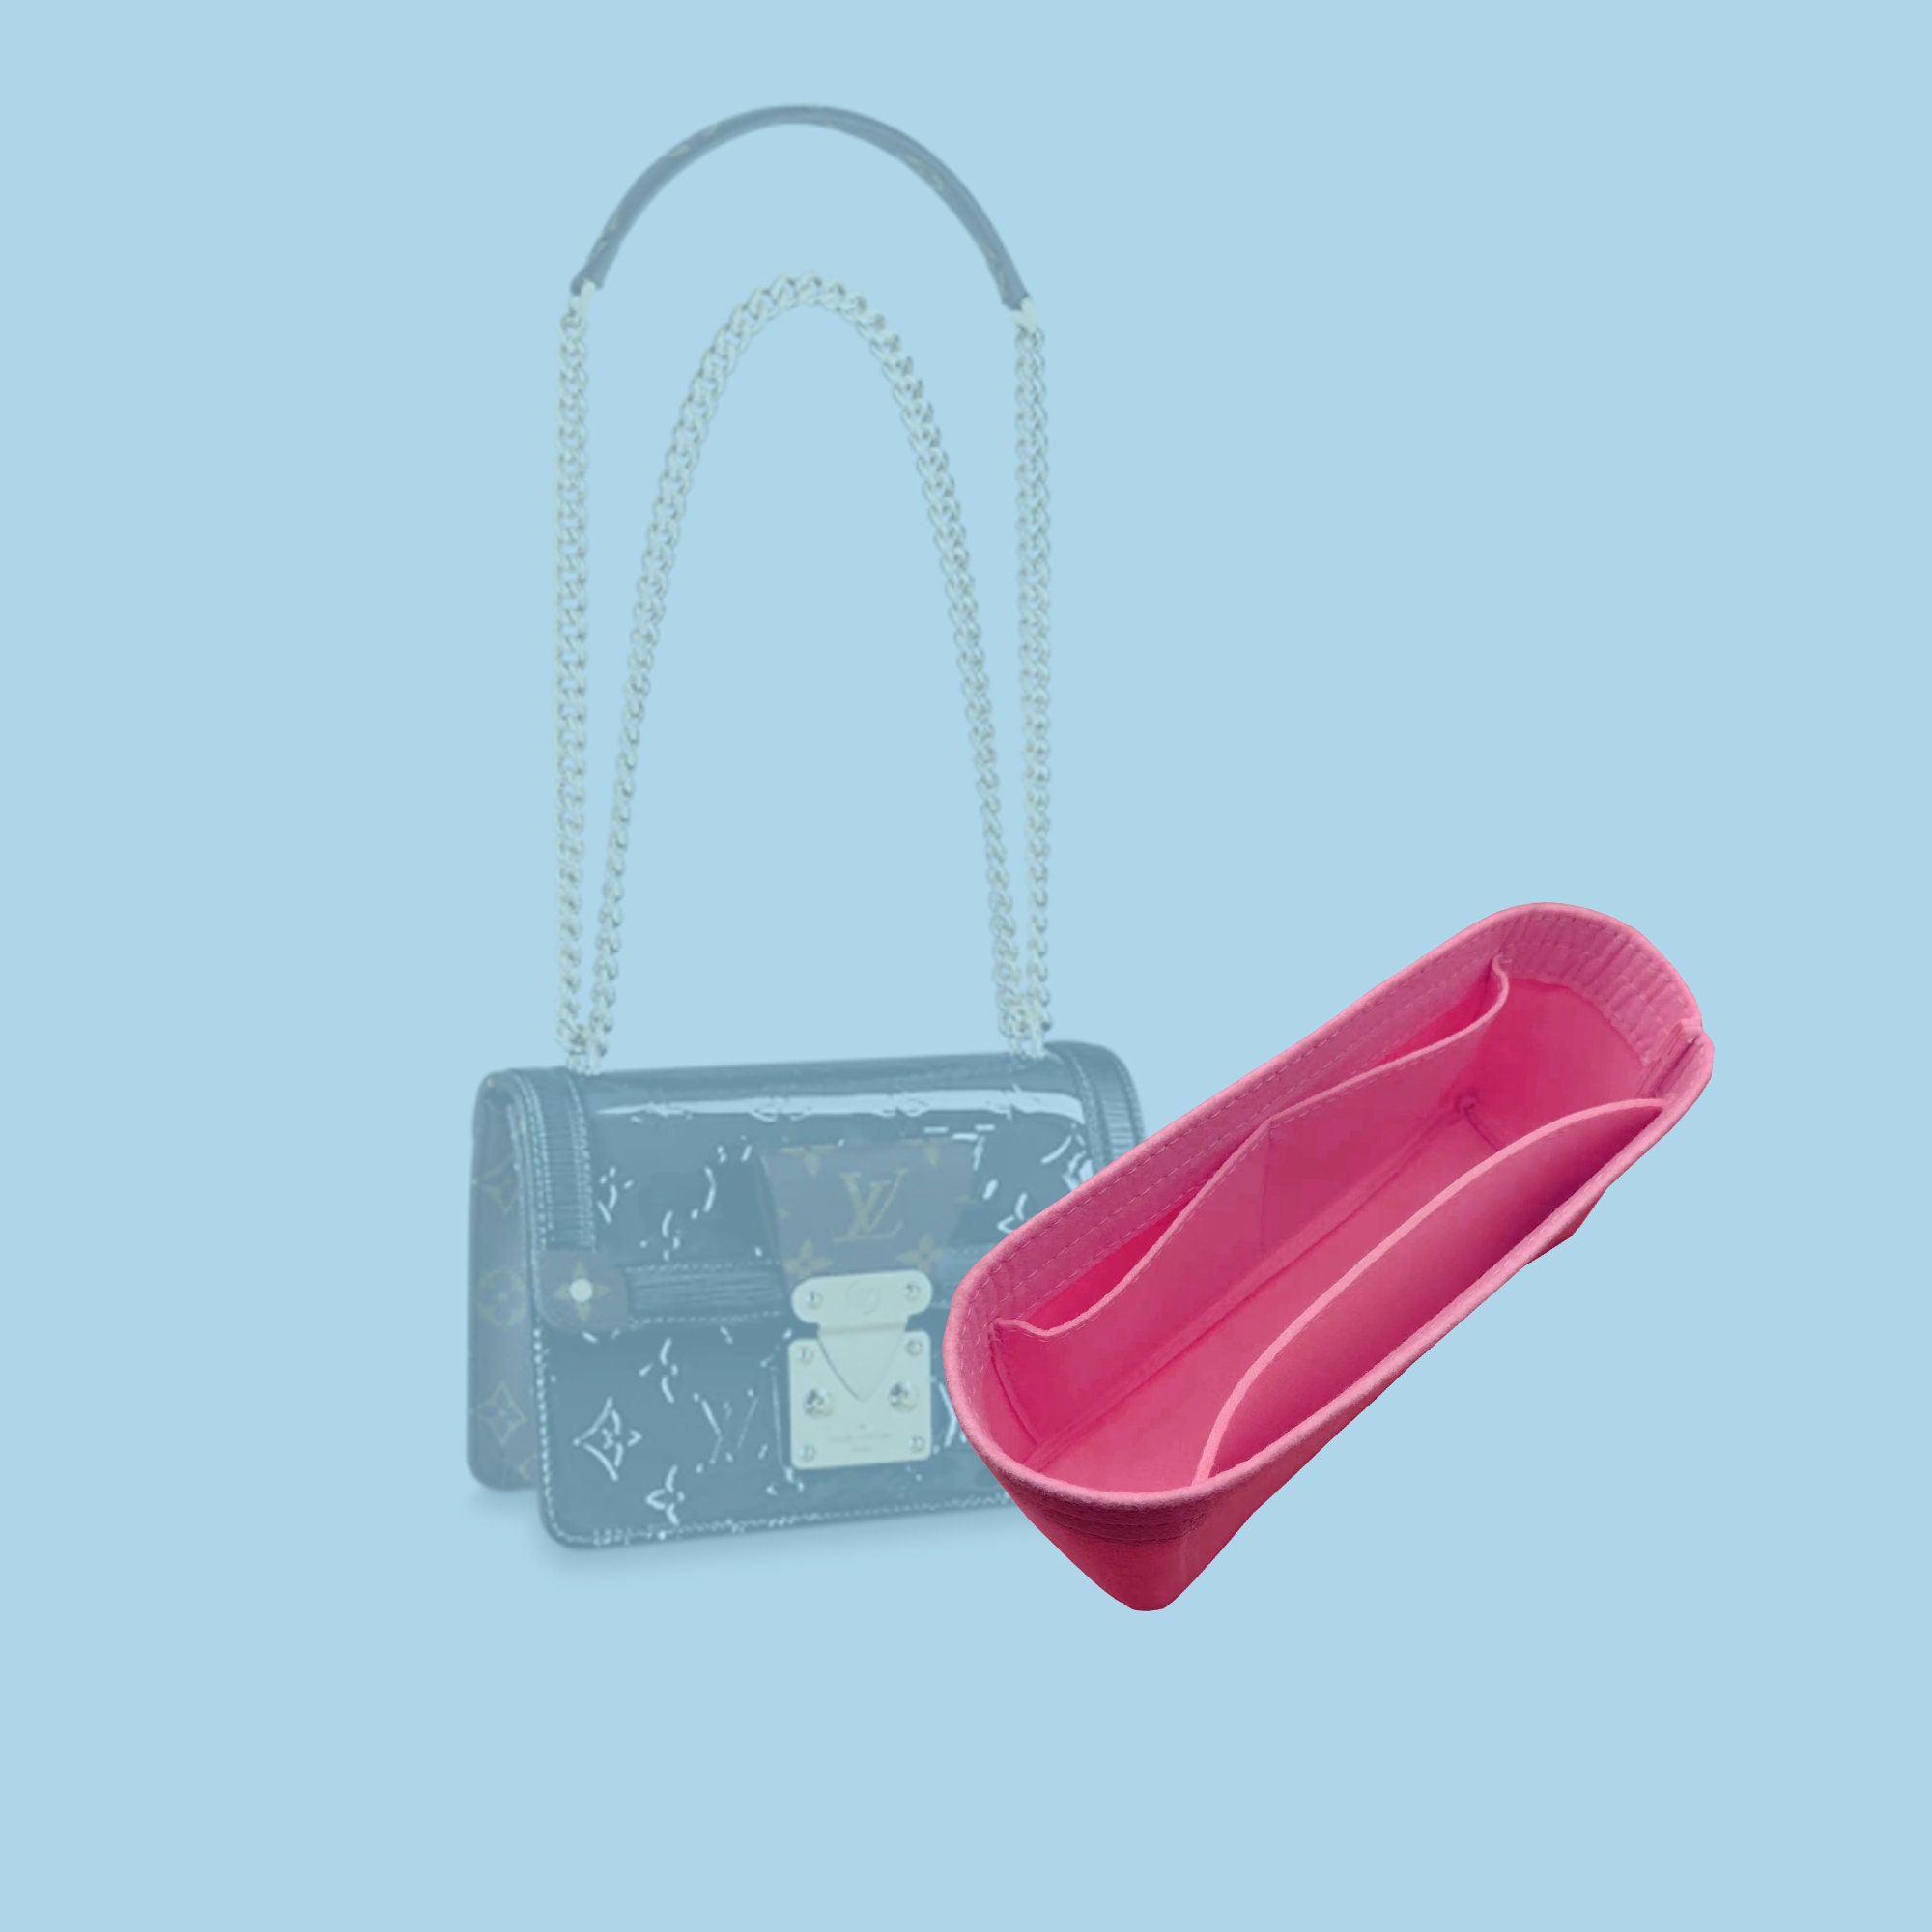 Handbag Organizer for Metis Hobo Designer Handbags | Purse Organizer Insert | Tote Bag Organizer | Tote Bag Liner | Bag Insert